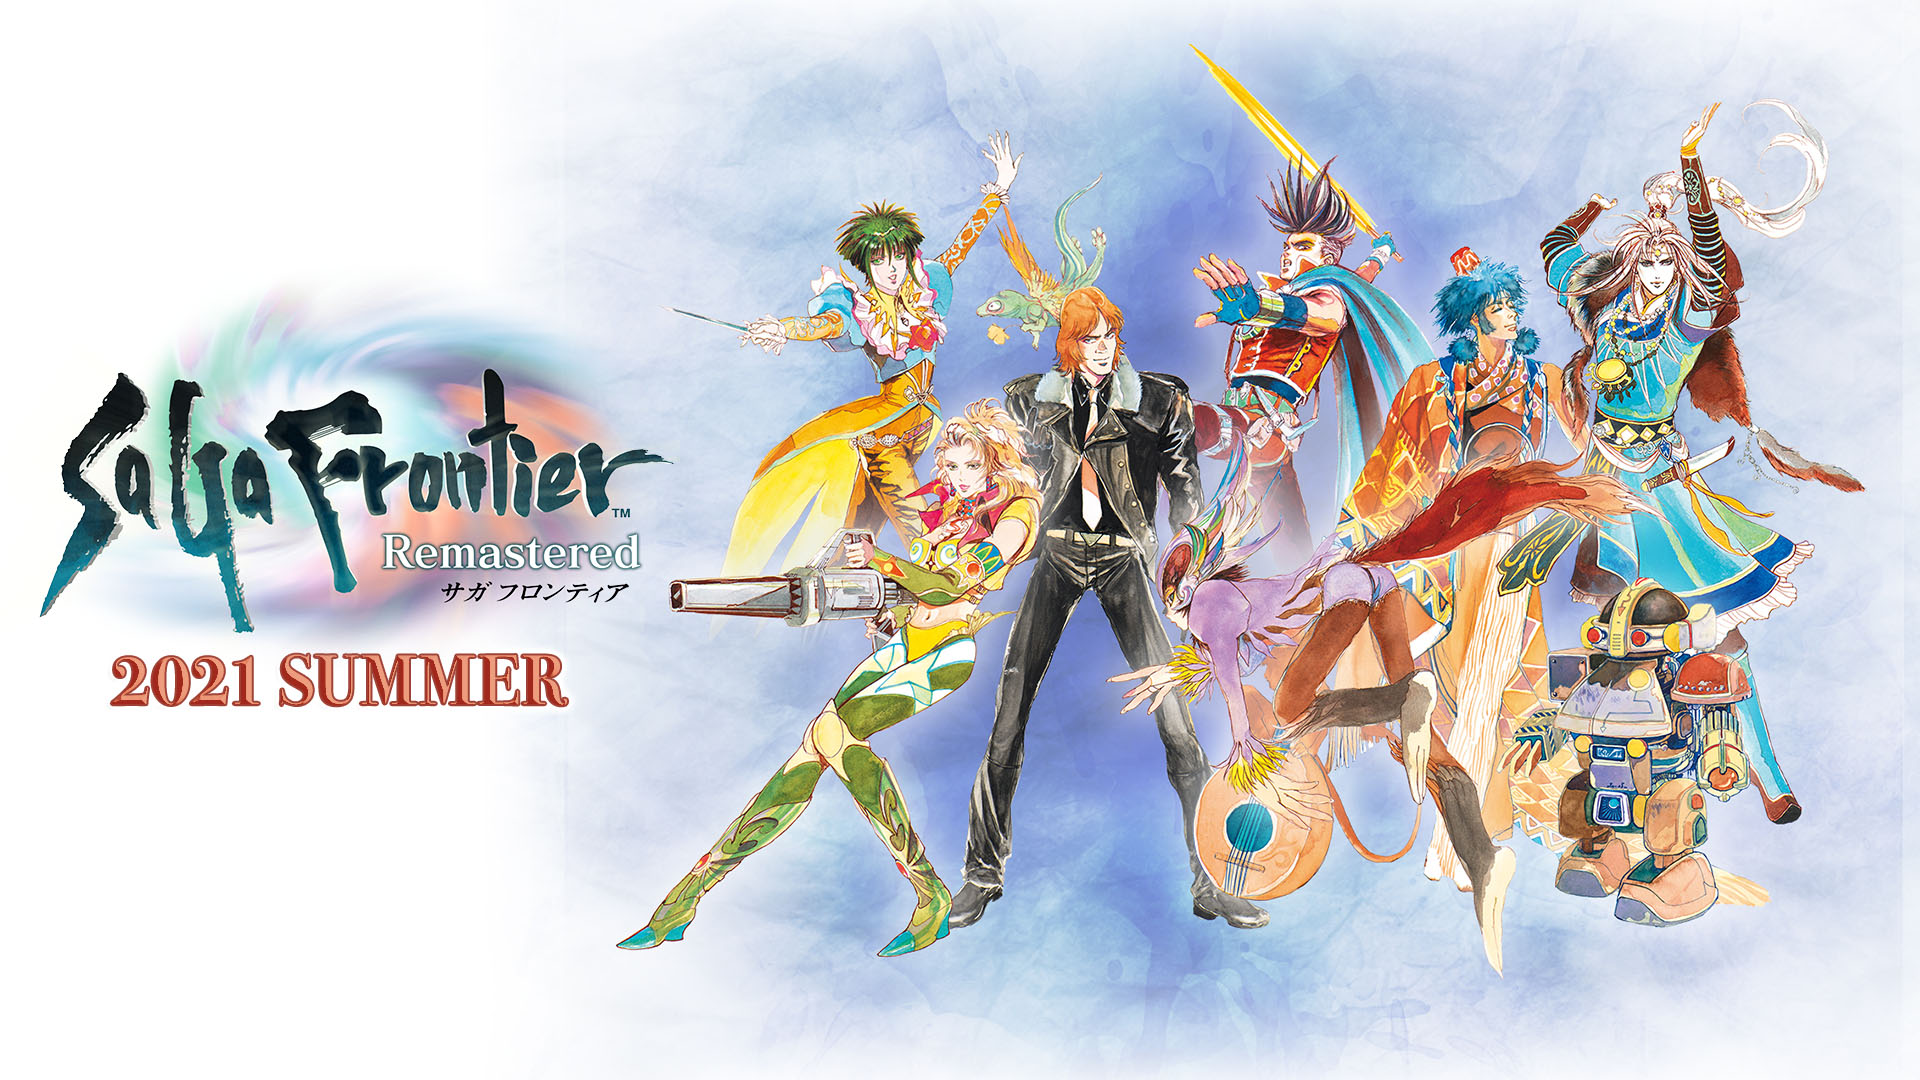 Na-remaster ng Saga Frontier 11 28 20 1